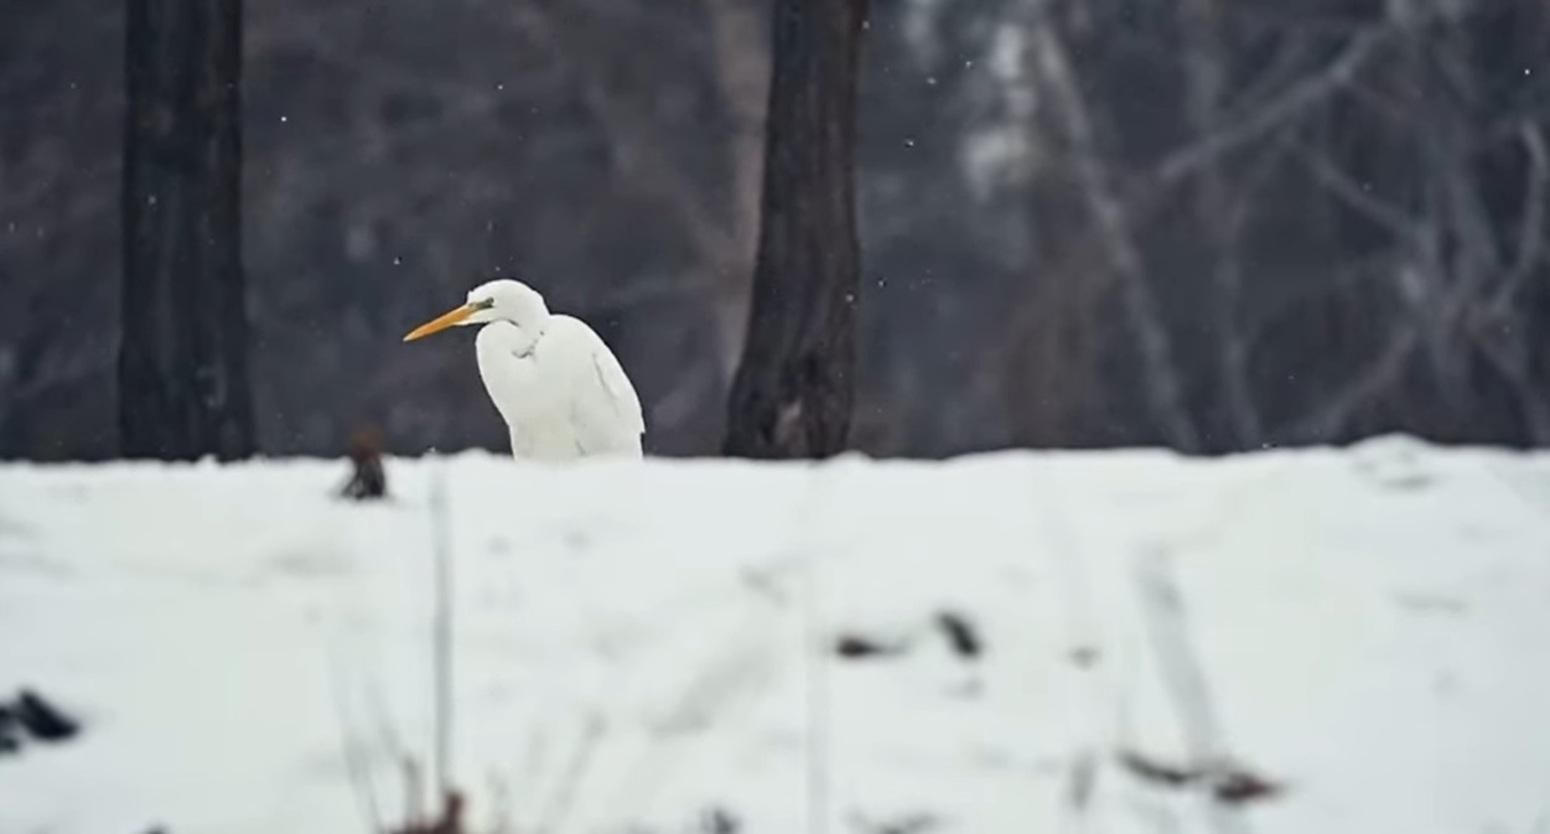 Влаштувала риболовлю: у київському парку побачили незвичайну птаху – цікаве відео - Новини Києва сьогодні - Київ